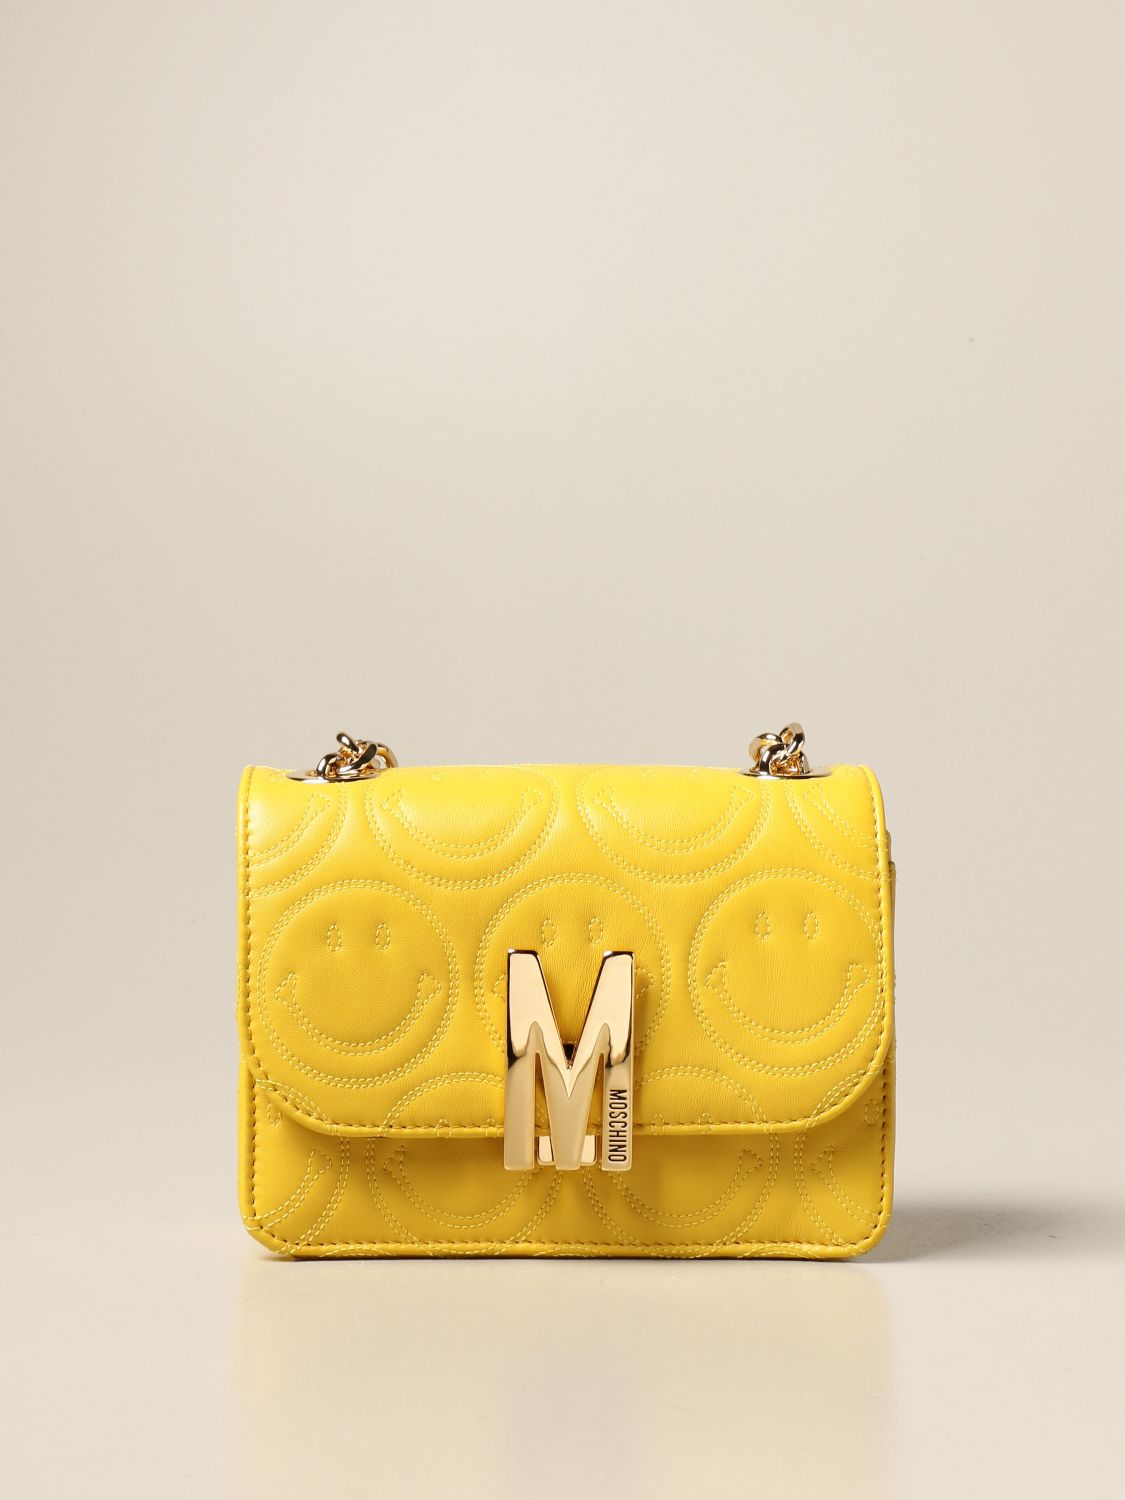 moschino yellow bag